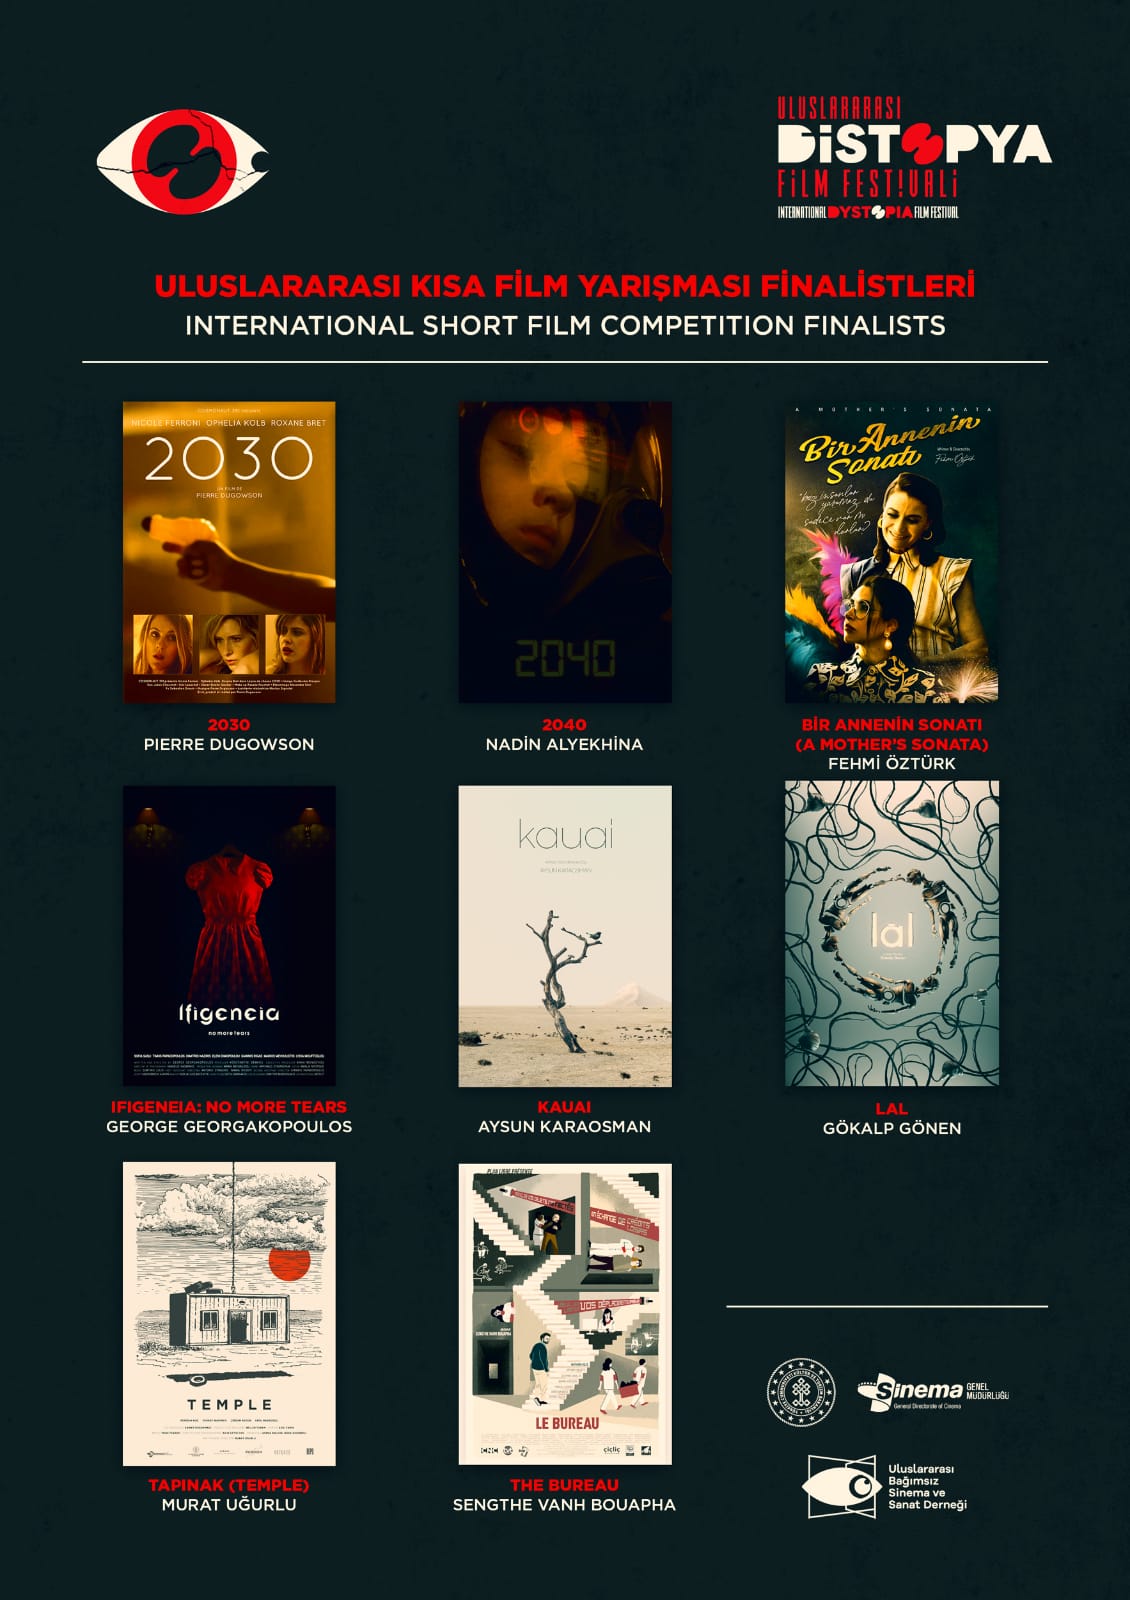 Distopya Film Festivali'nde En İyi Film Ödülü İçin 8 Aday